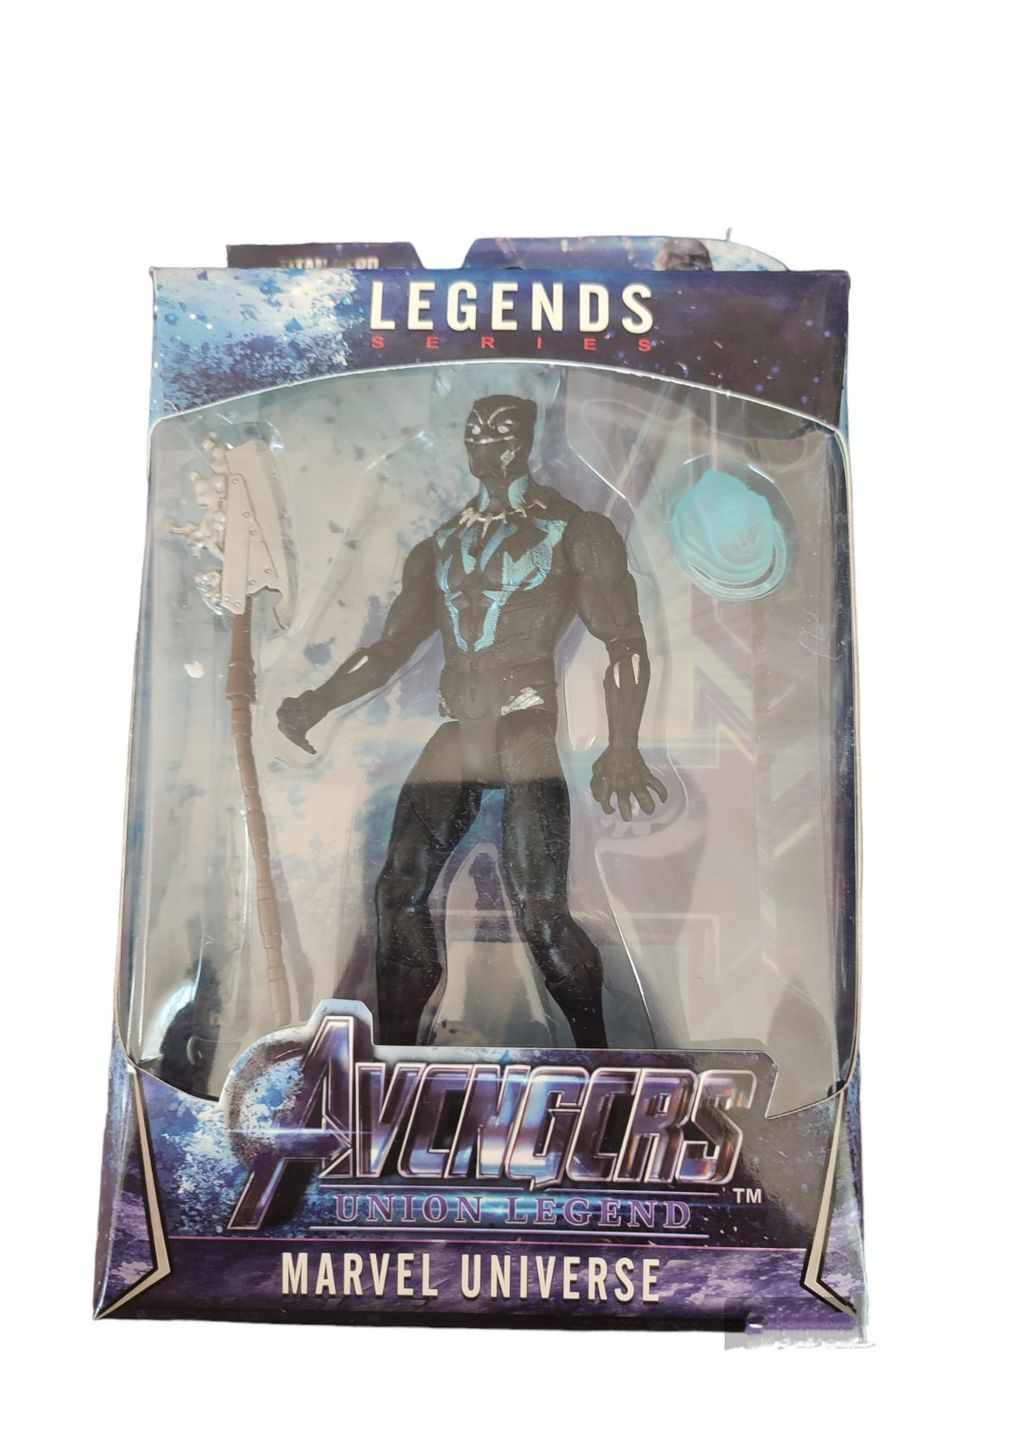 Мстители фигурка Черная пантера подвижная модель игрушка из фильма Black Panther Avengers NECA (280258062)